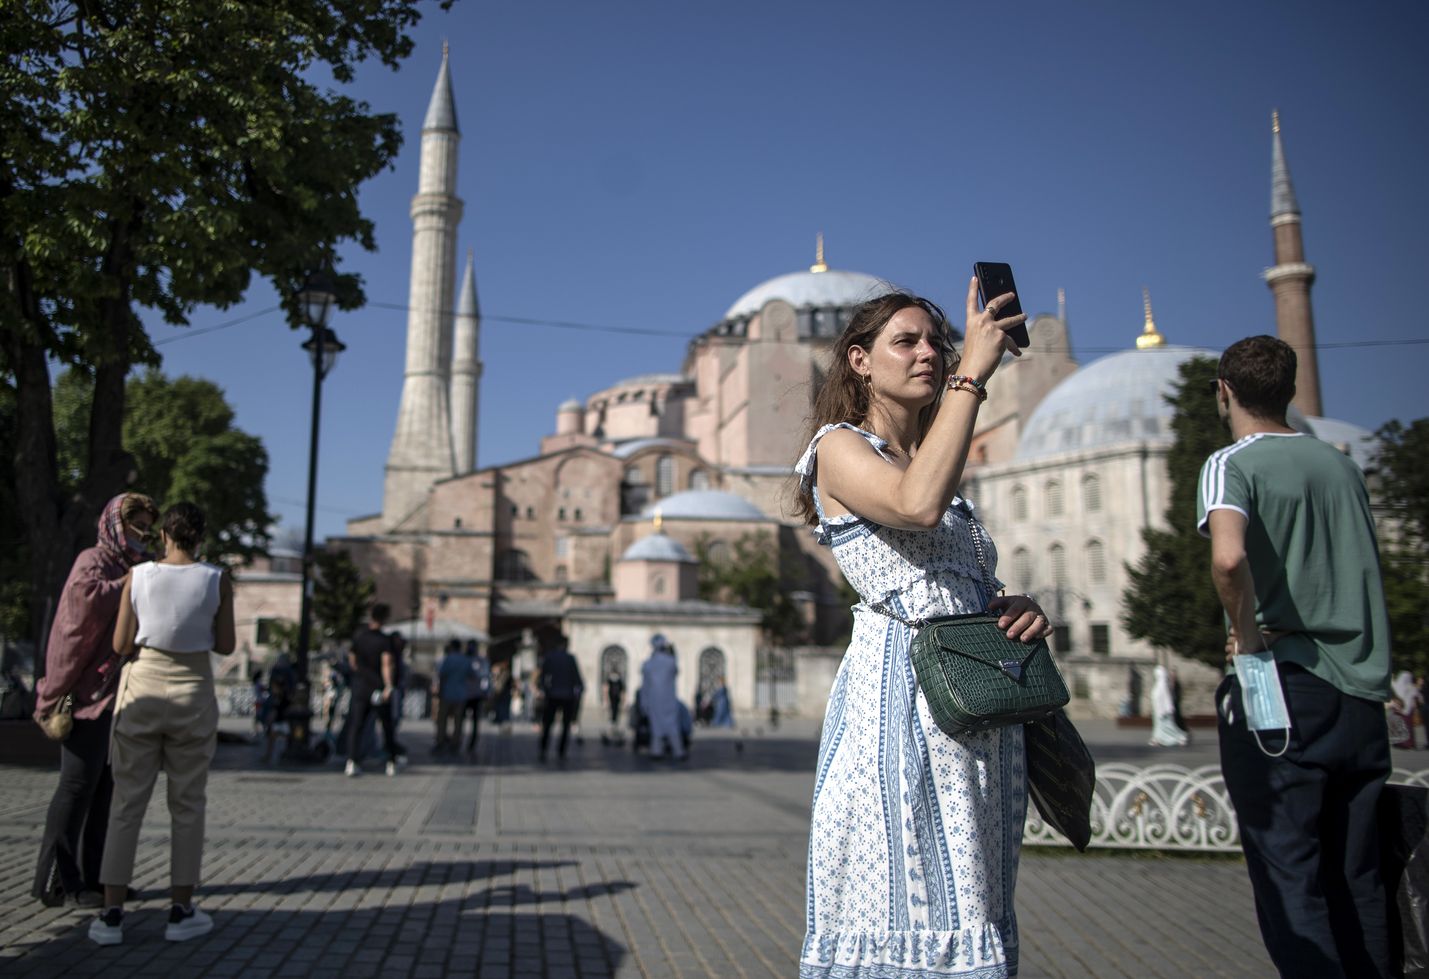 Istanbulin kuuluisa Hagia Sofia ja muut nähtävyydet kiinnostavat taas matkailijoita koronavuosien aallonpohjan jälkeen. Suomalaiset ovat matkatoimistojen mukaan varanneet innolla matkoja Turkkiin.